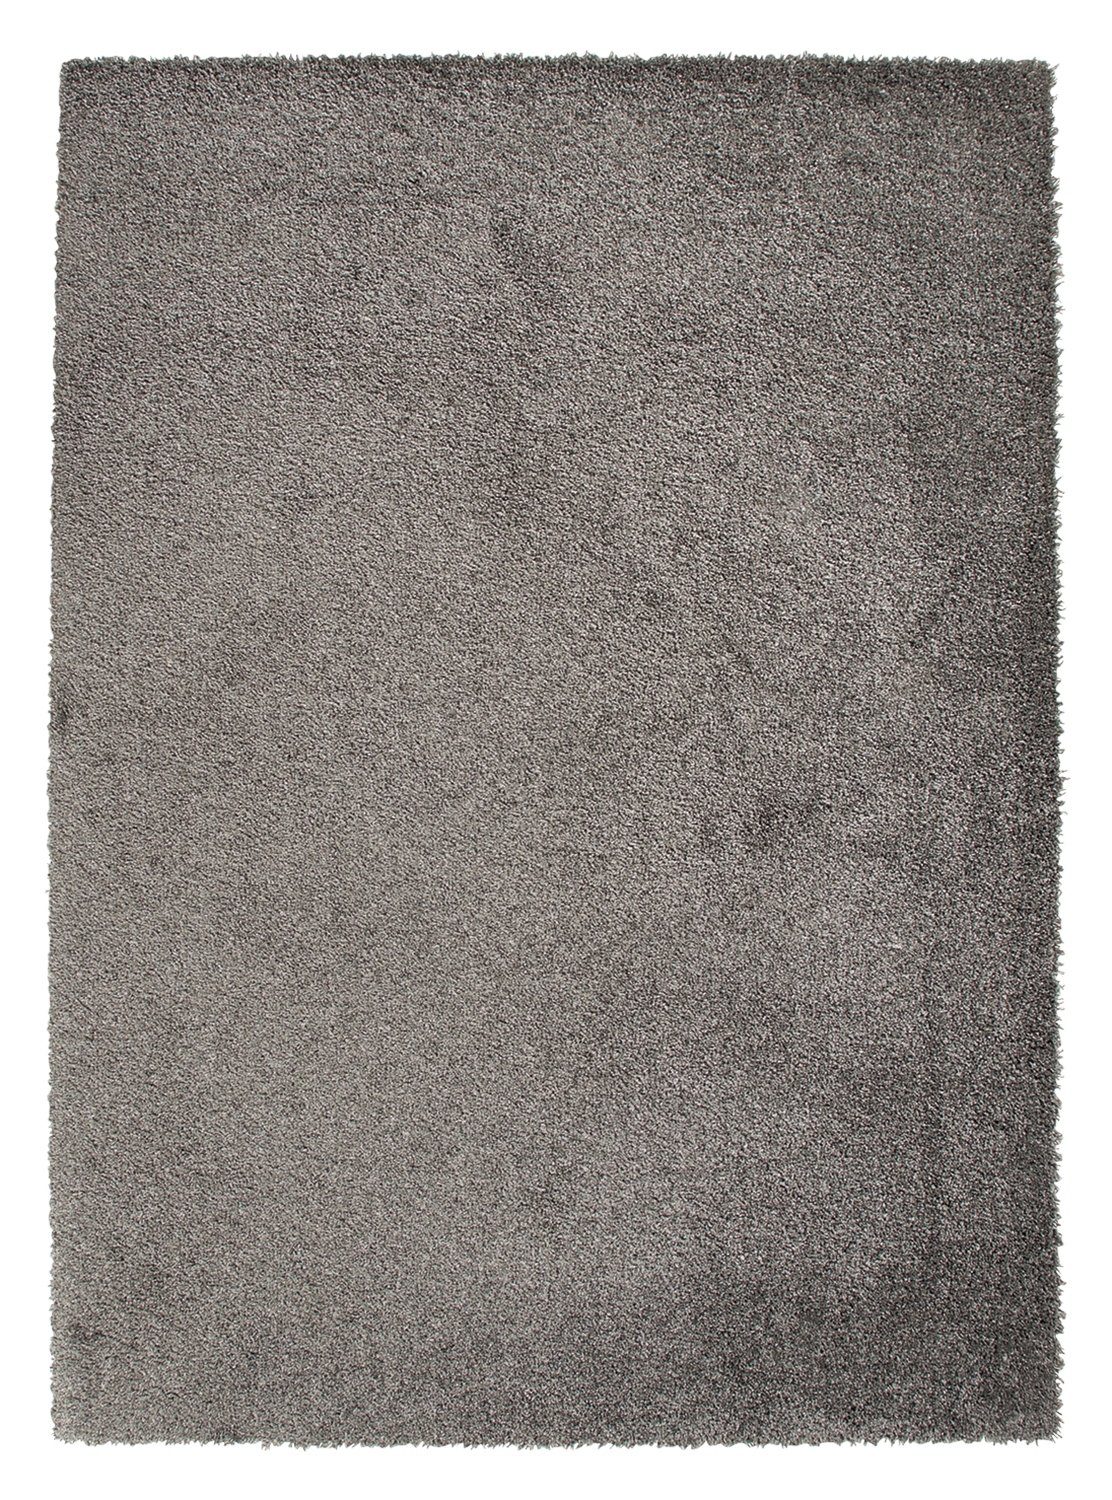 Teppich DELIGHT COSY, Polypropylen, Grau, 80 x 150 cm, Balta Rugs, rechteckig, Höhe: 22 mm